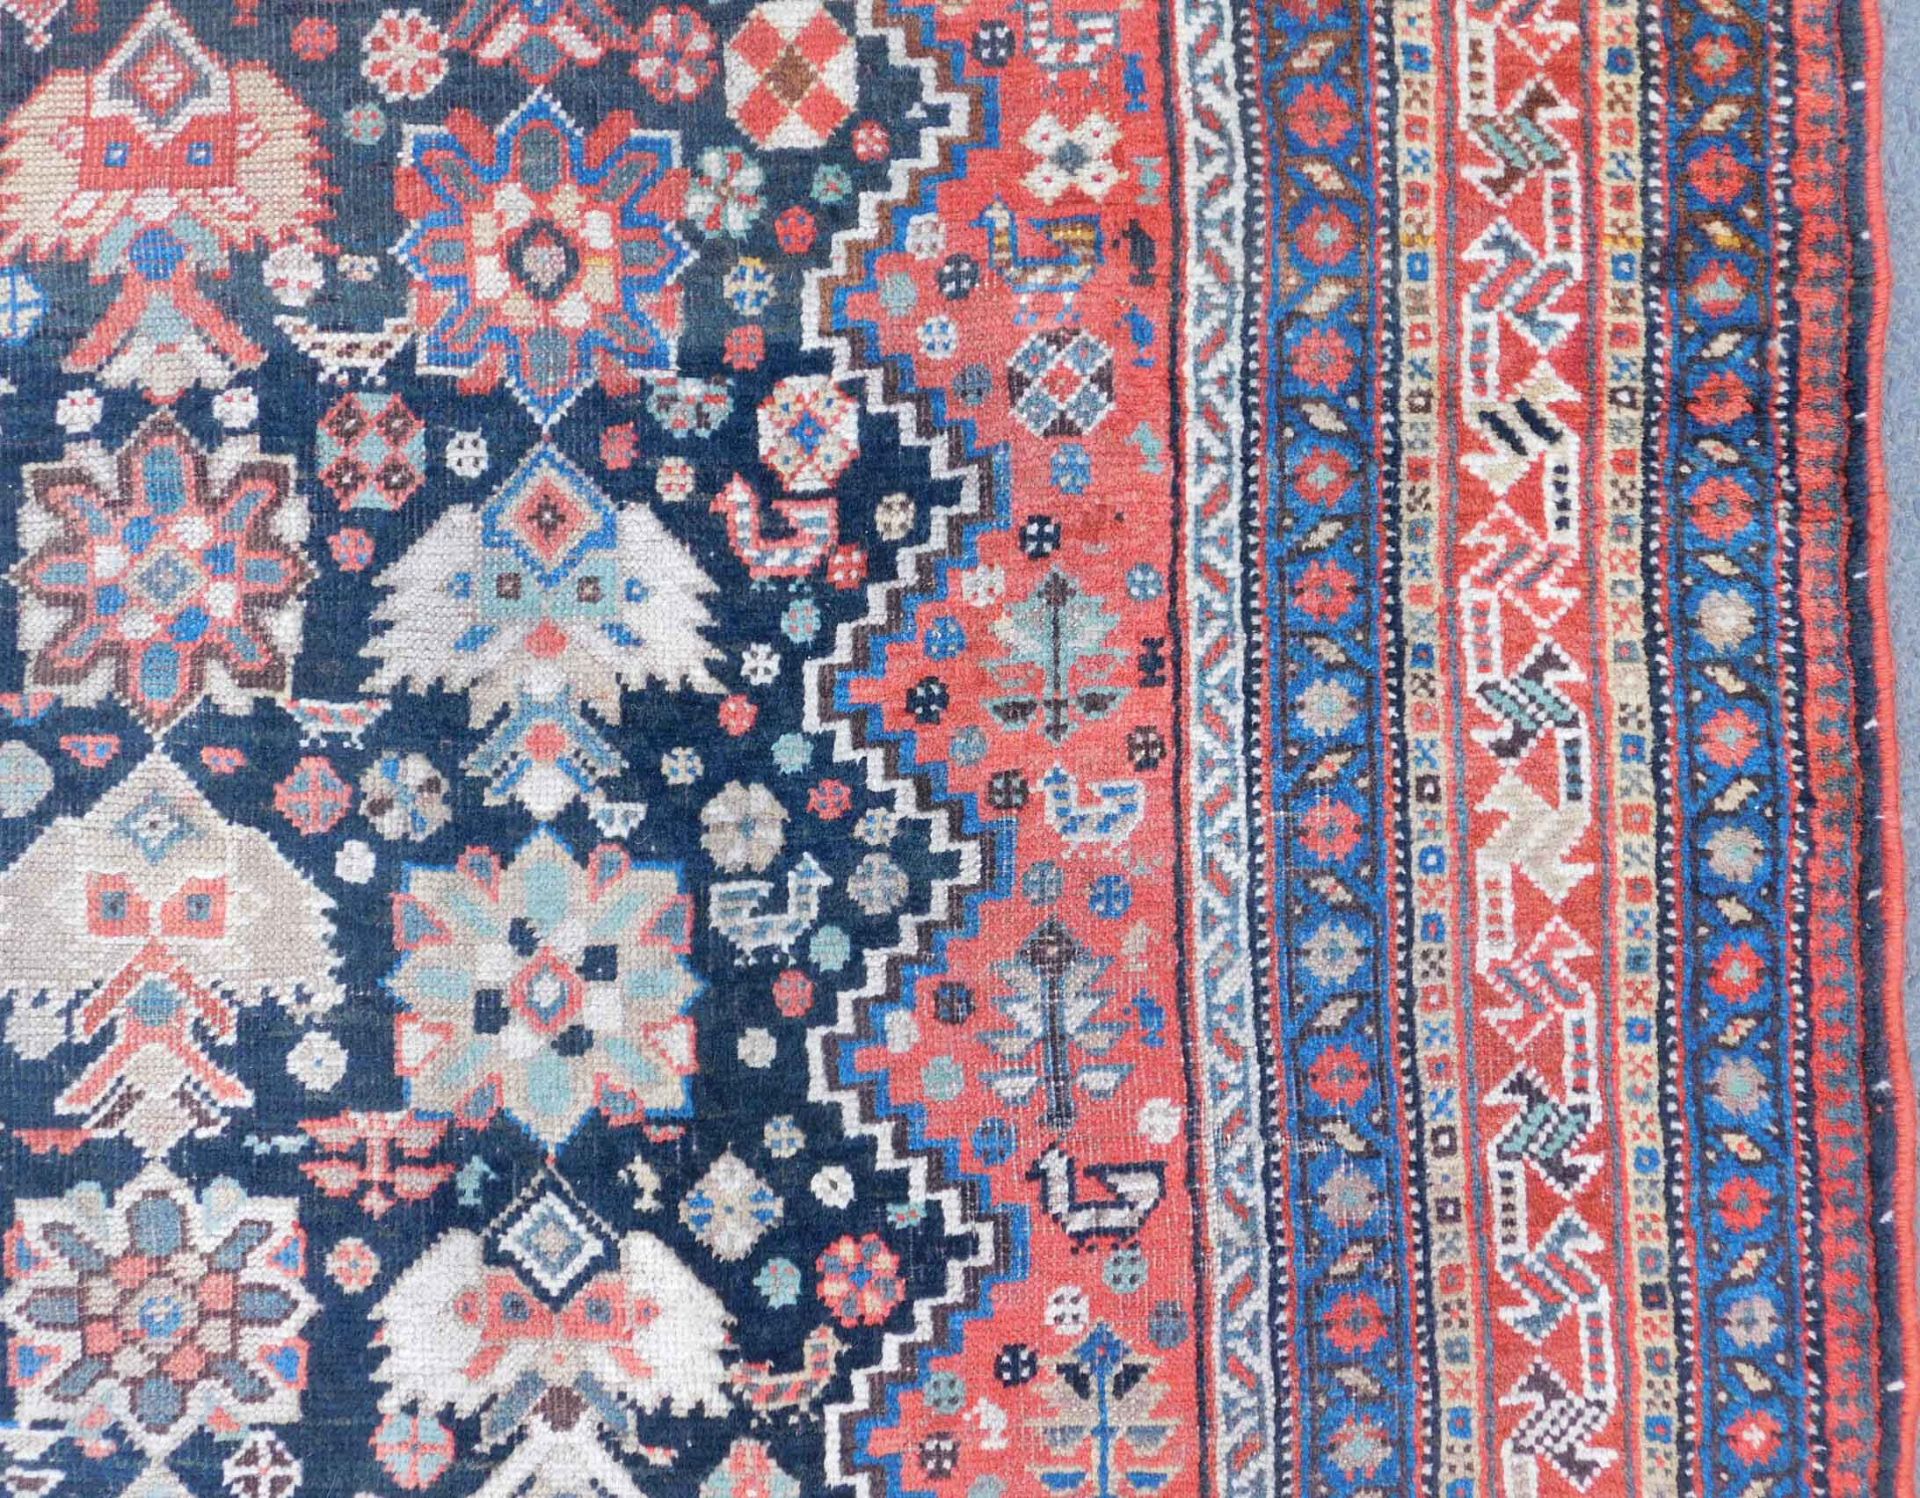 Khamseh Persian carpet. Iran. Antique, around 100 - 150 years old. - Image 5 of 9